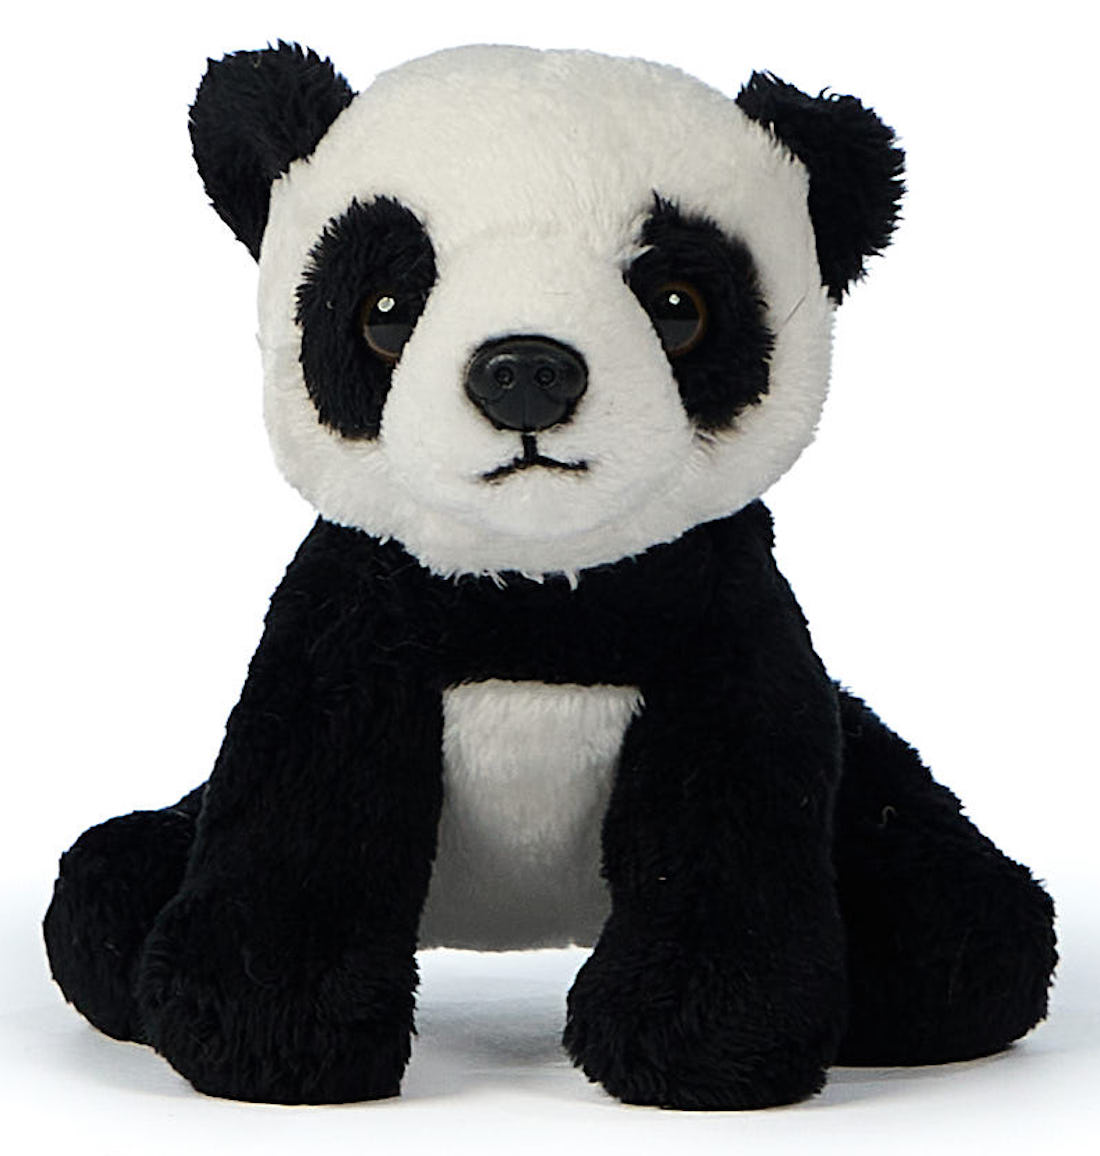 Panda bear plushie - 14 cm (length)